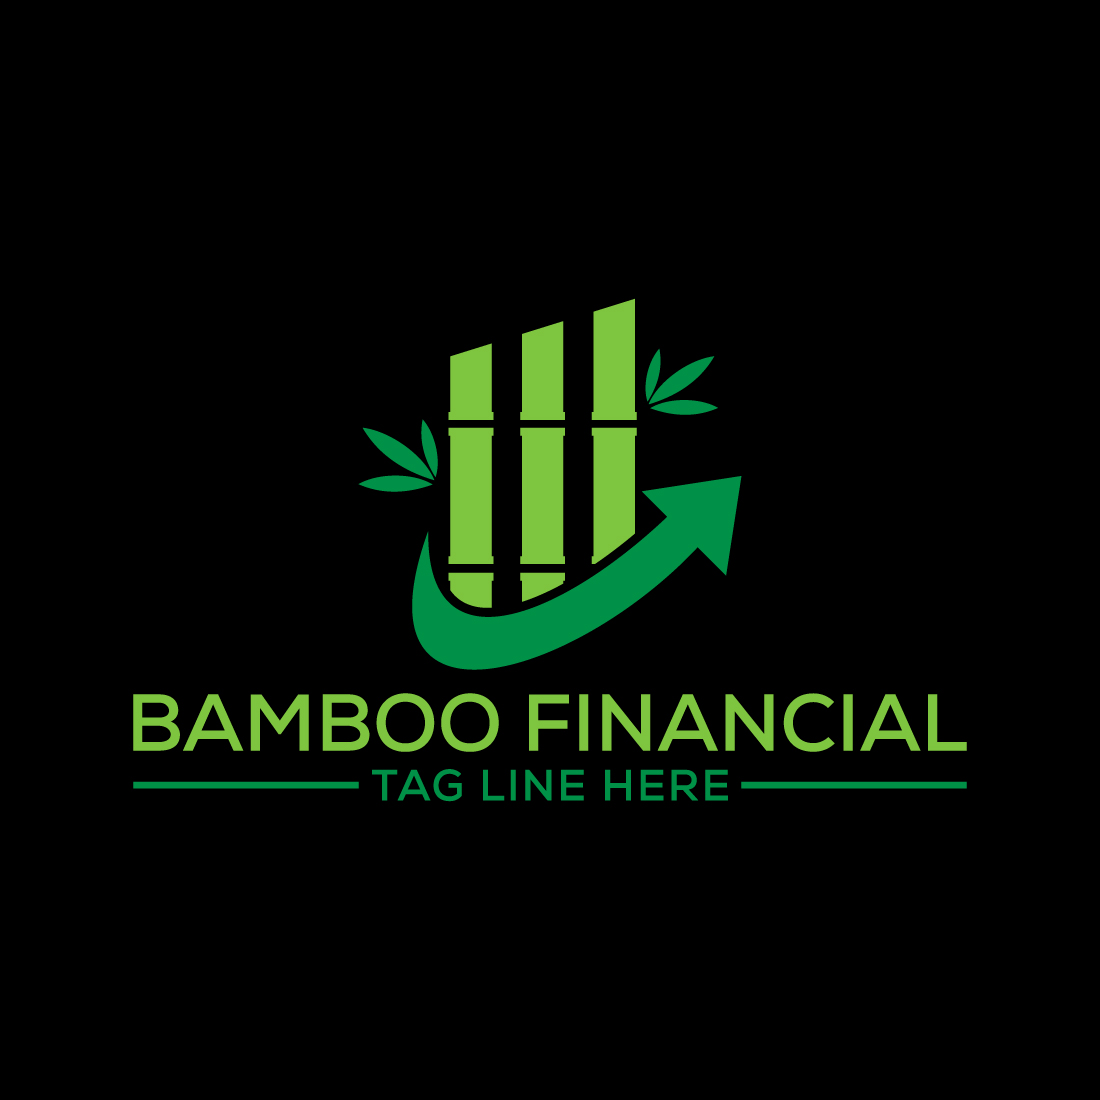 Bamboo Financial logo design, Vector design template cover image.